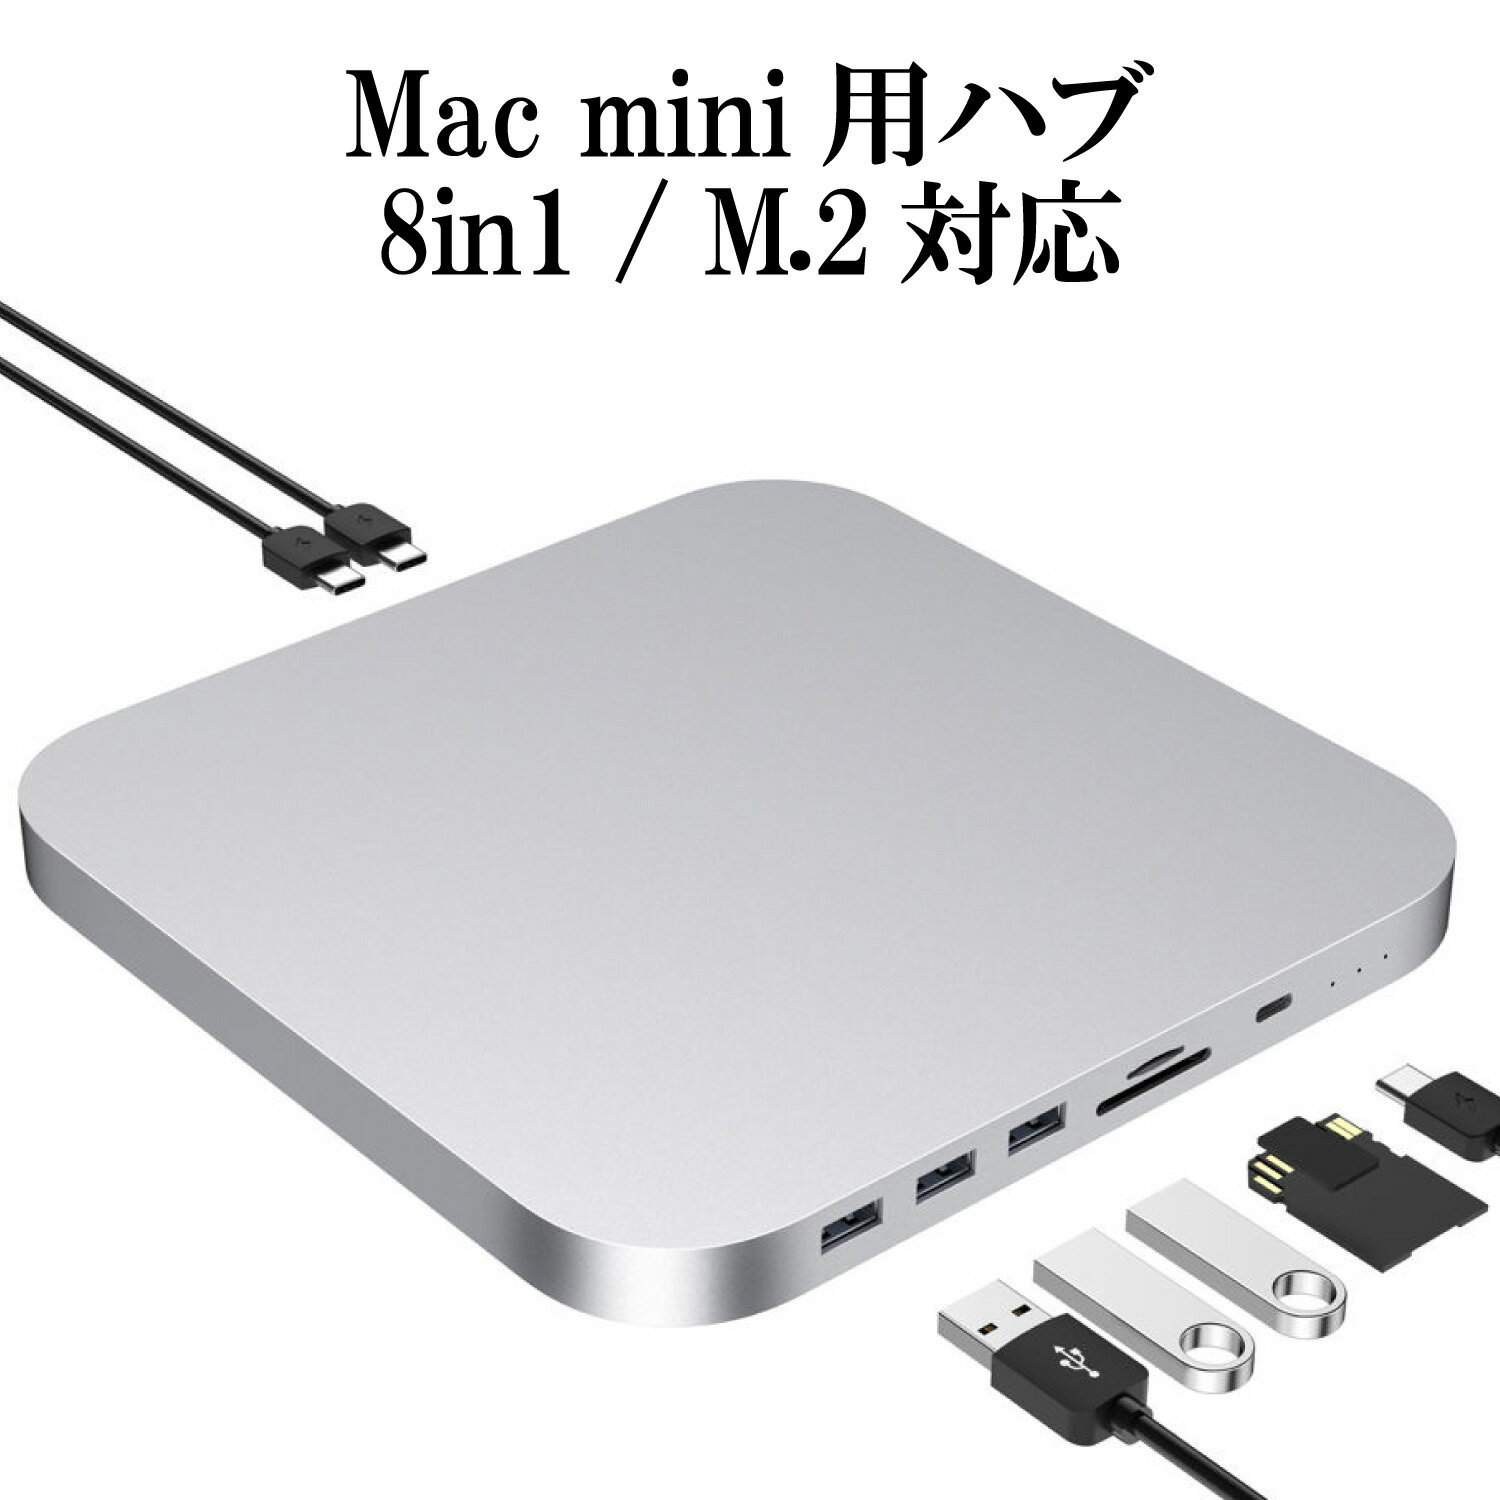 Mac mini ドッキングステーション ( 8in1 TypeC ハブ ) シルバー / M.2 + 2.5インチ SATA接続 SSD / HHD スロット (外付け SSD ケース ) / TypeA USB3.0 TypeC USB3.1 SD/TF microSD カードリーダー